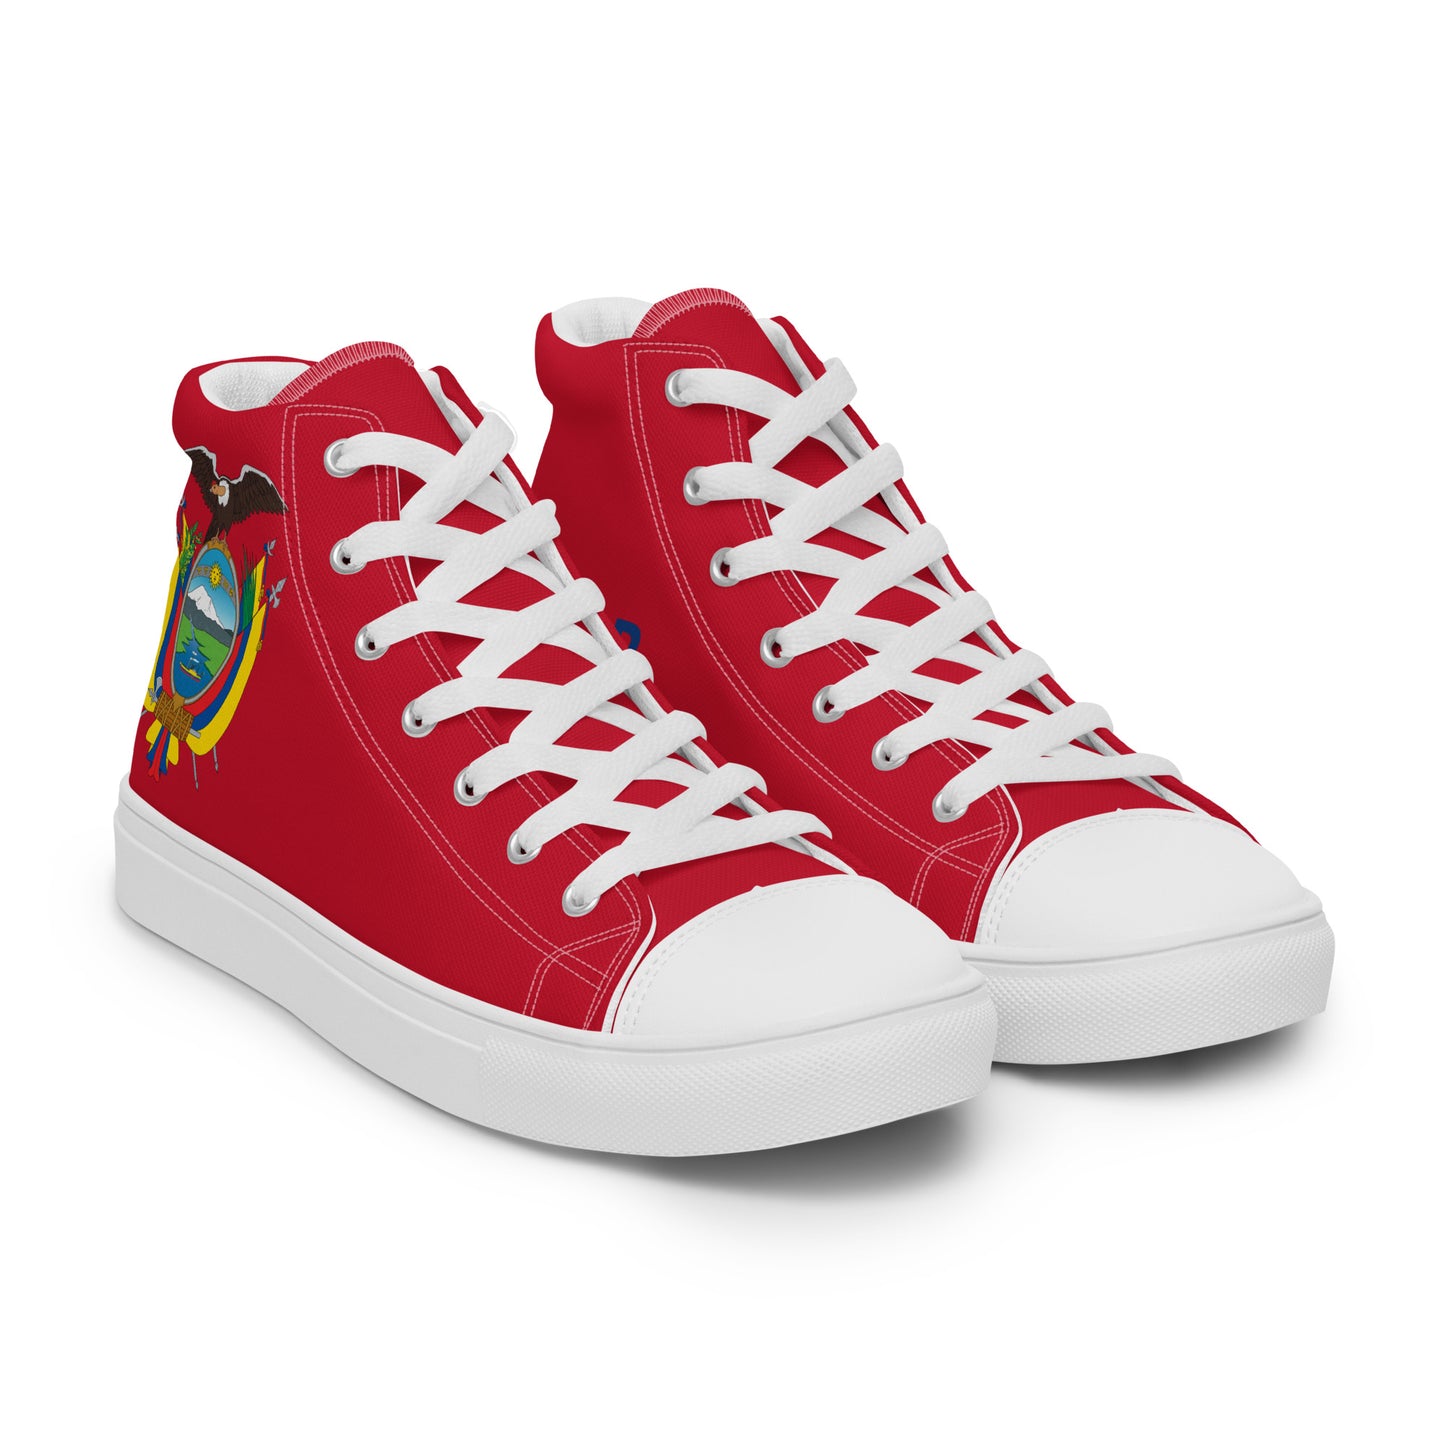 Ecuador - Men - Red - High top shoes